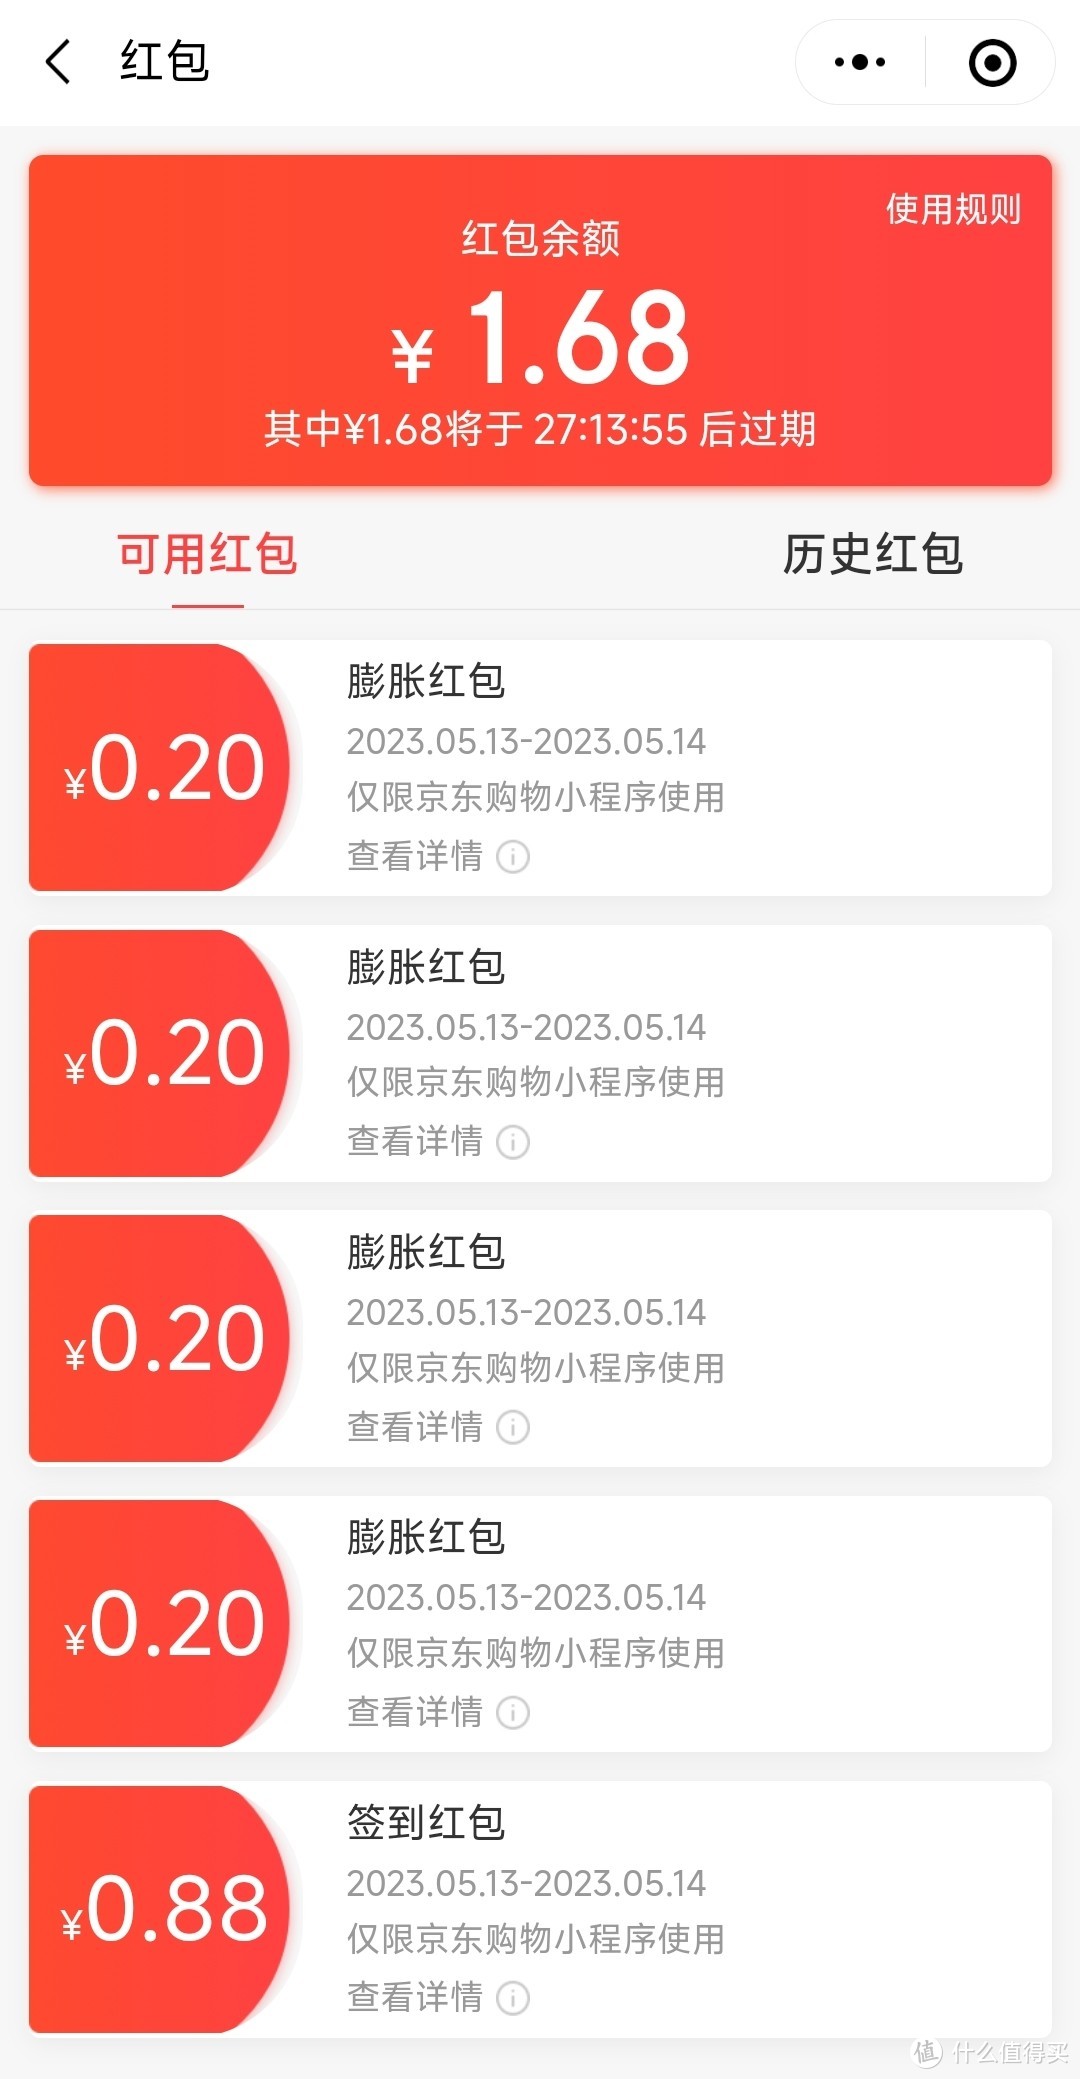 【推荐收藏】京东红包小全，虽然福利都在缩水，但还有超过10个地方有红包可以领（2023年5月中更新）